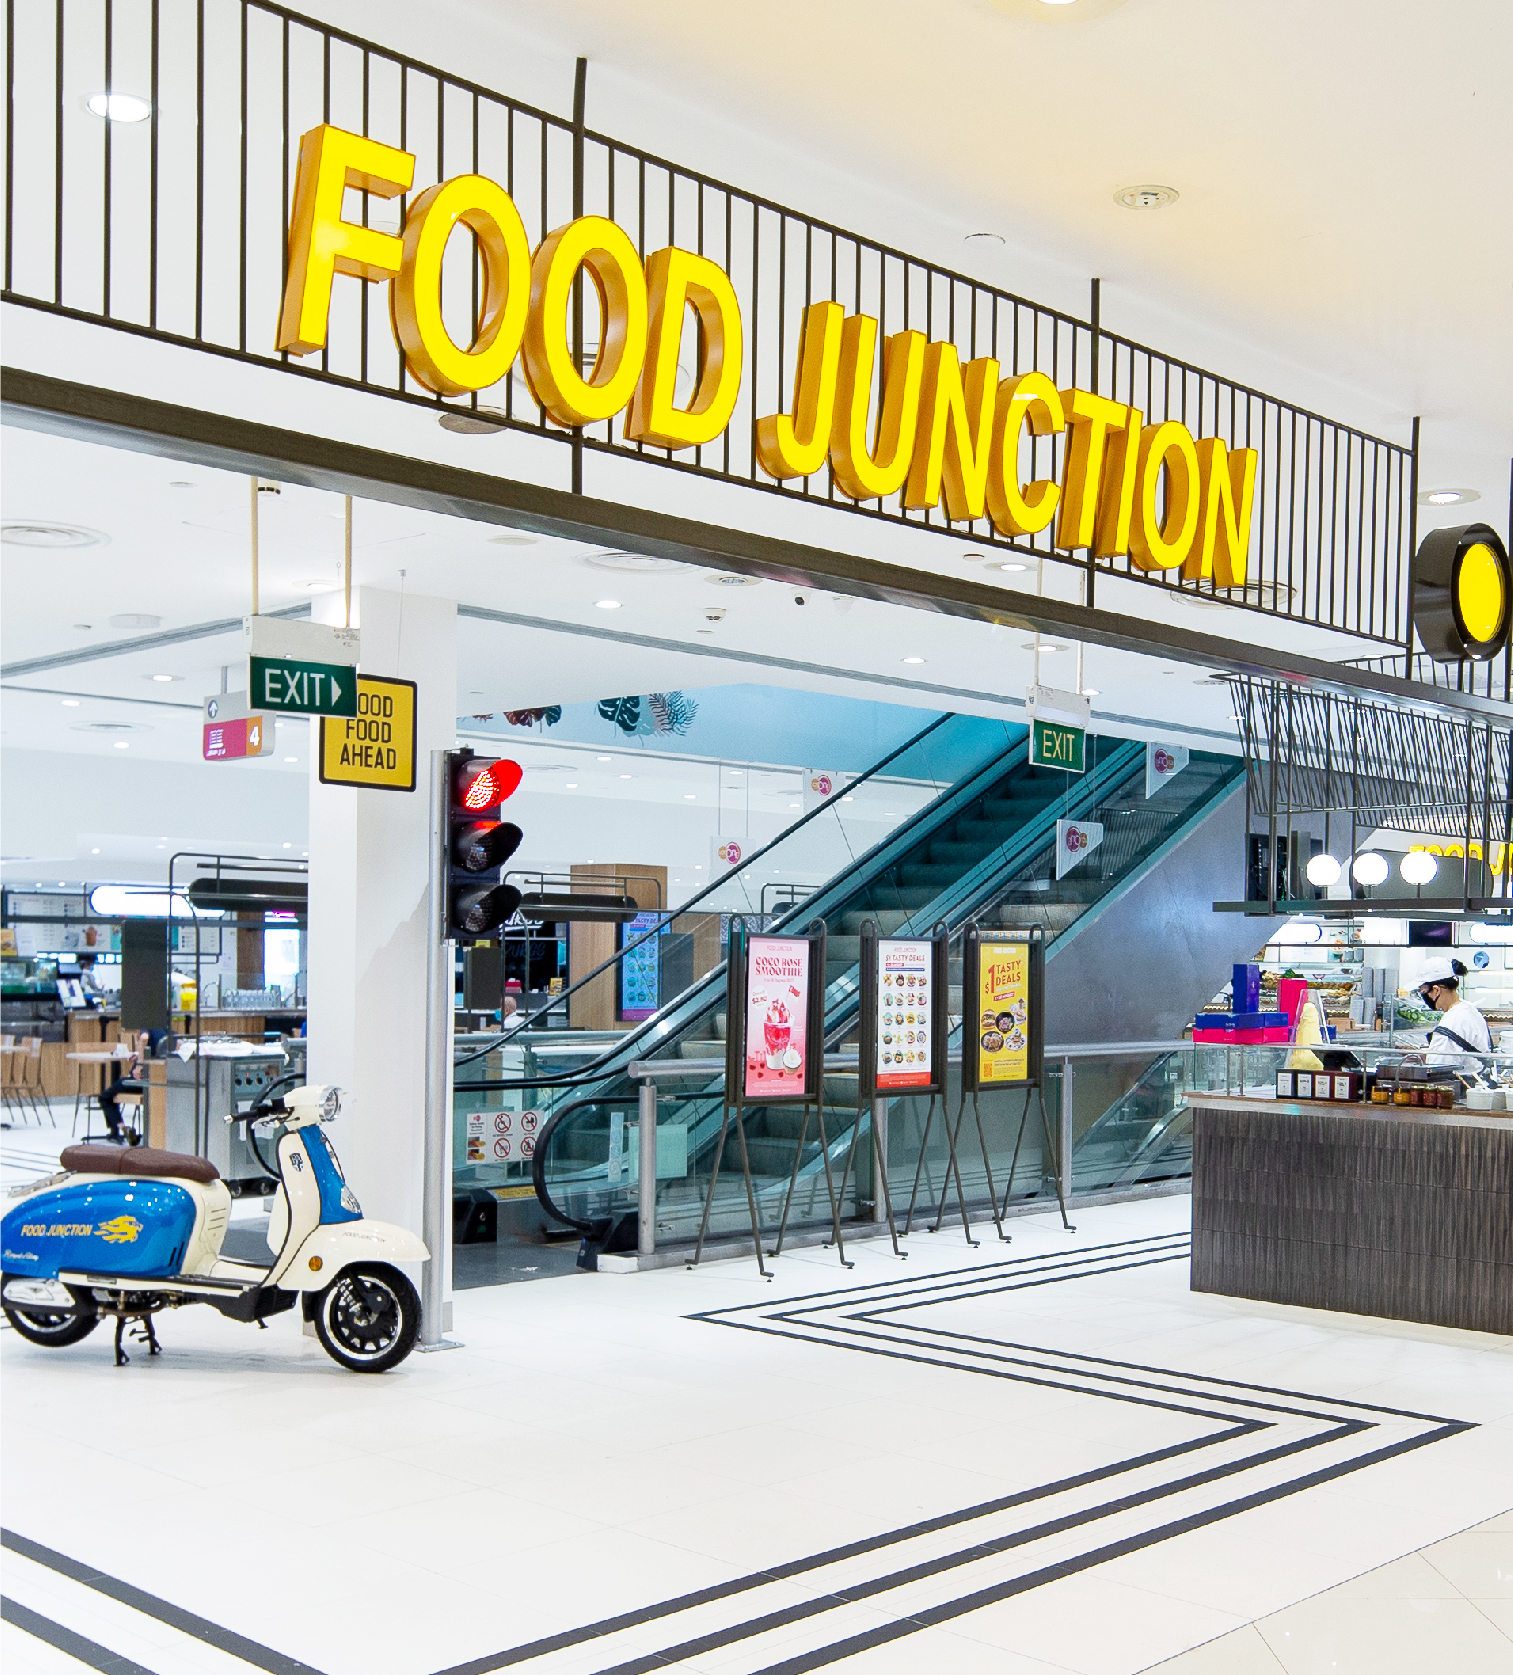 Food Junction Pte Ltd.